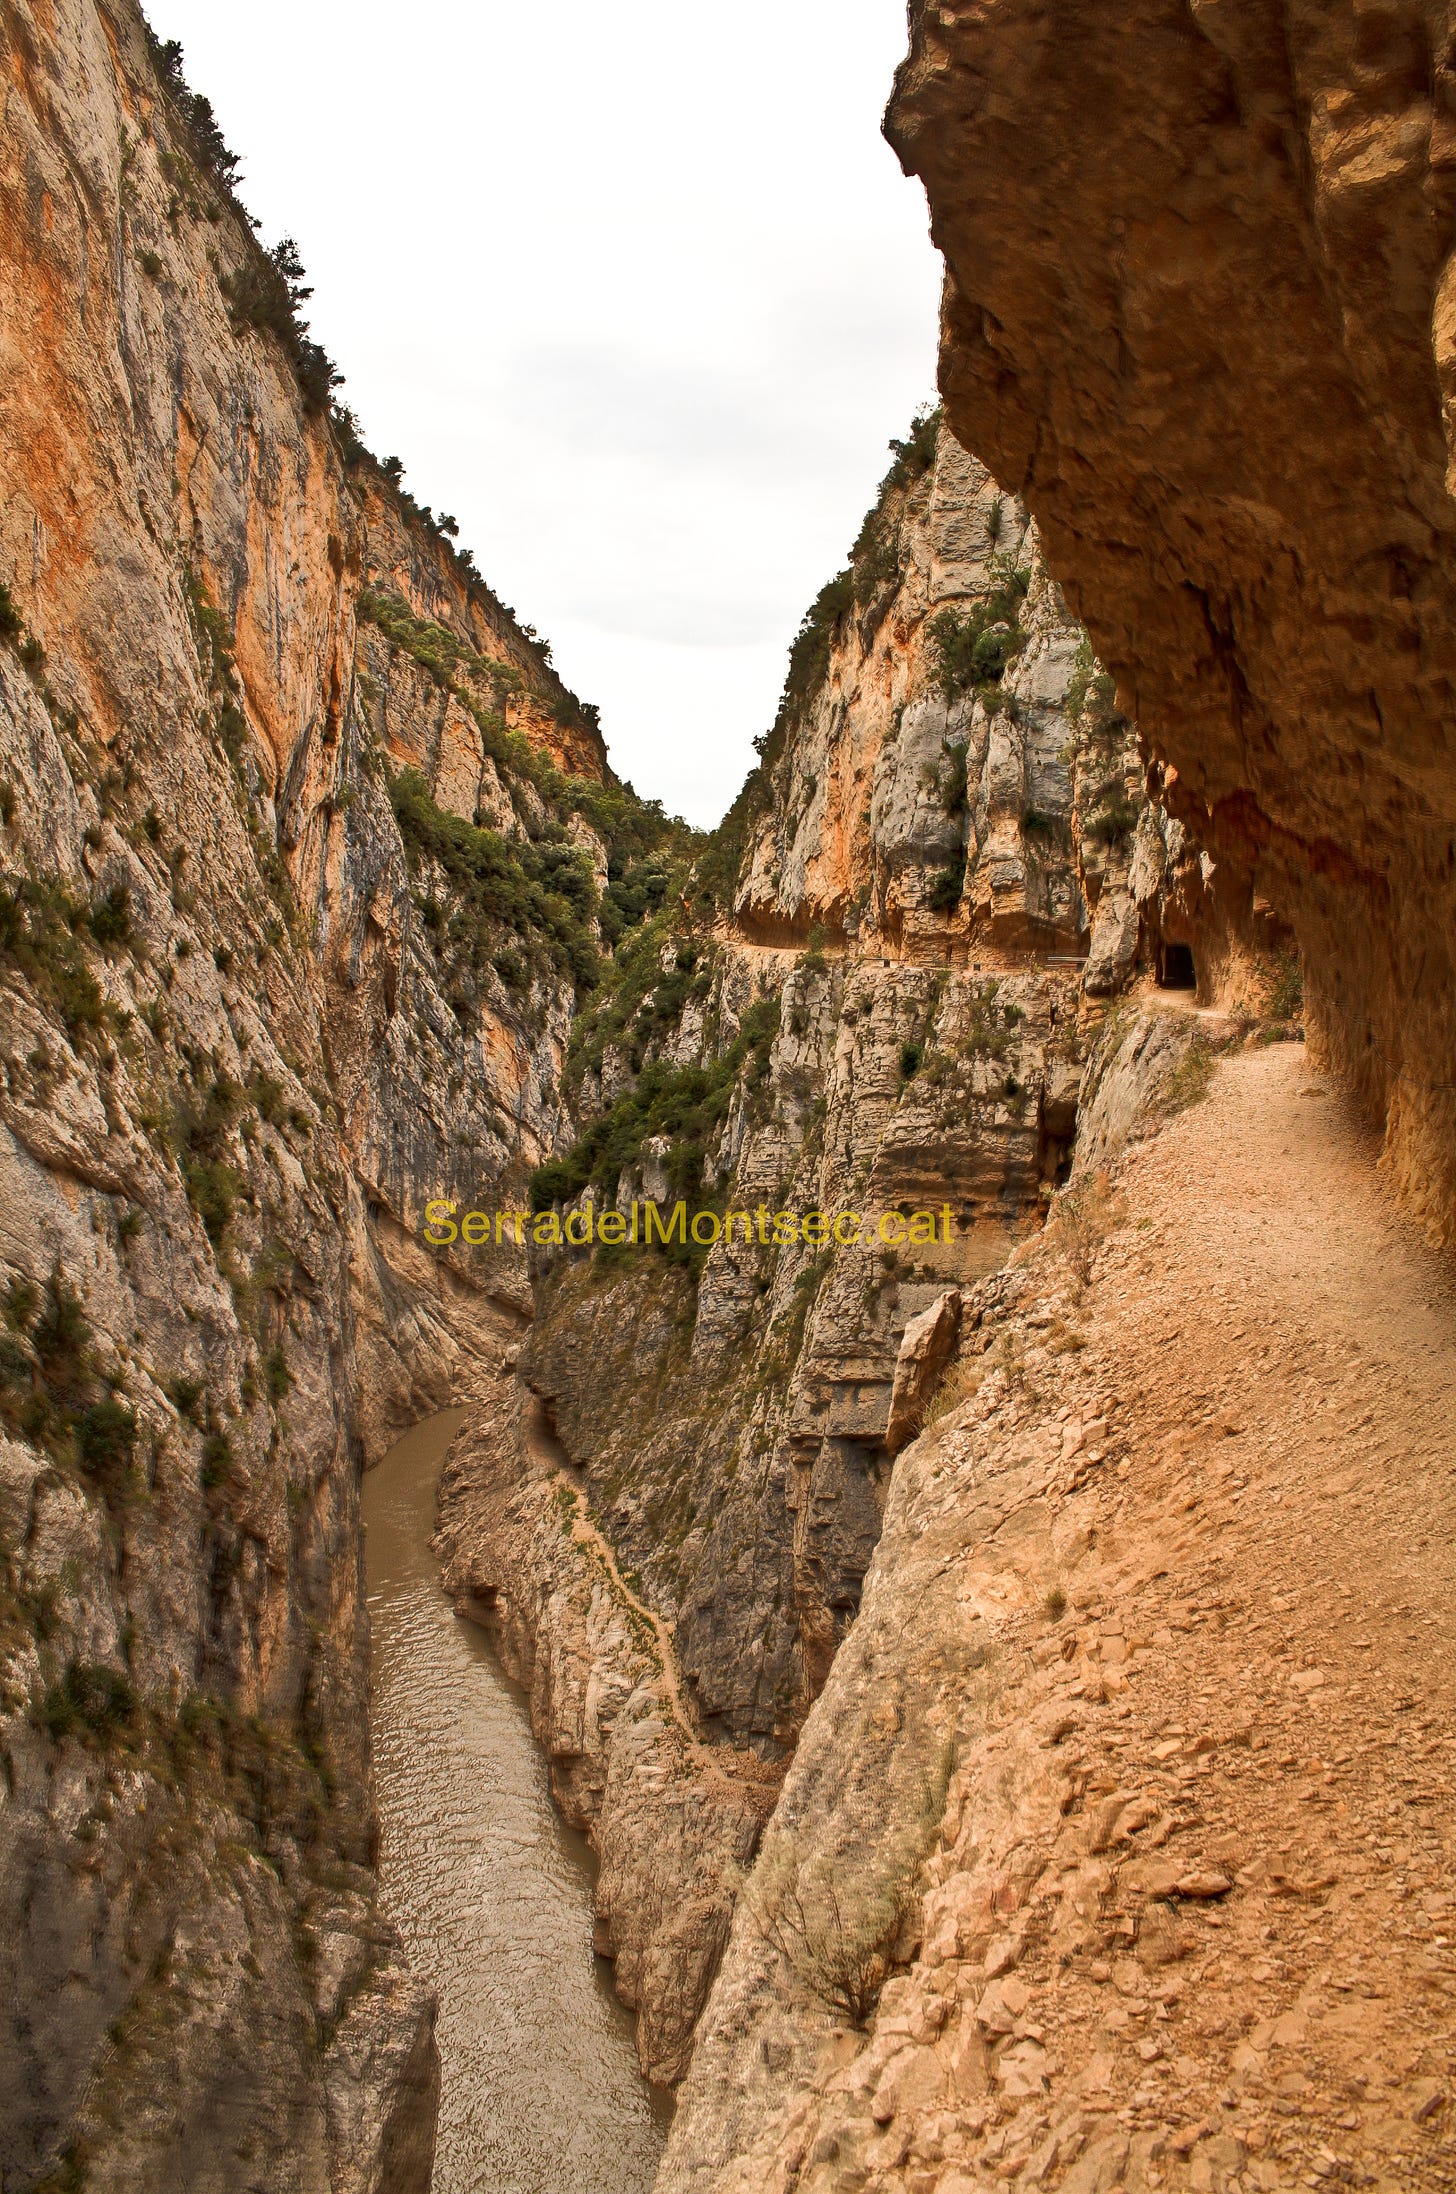 Imatge del Congost de Mont-rebei on es poden observar els dos camins. A baix, el camí antic obert per la Mancomunitat de Catalunya, i a dalt el camí posteriorment obert per Enher.